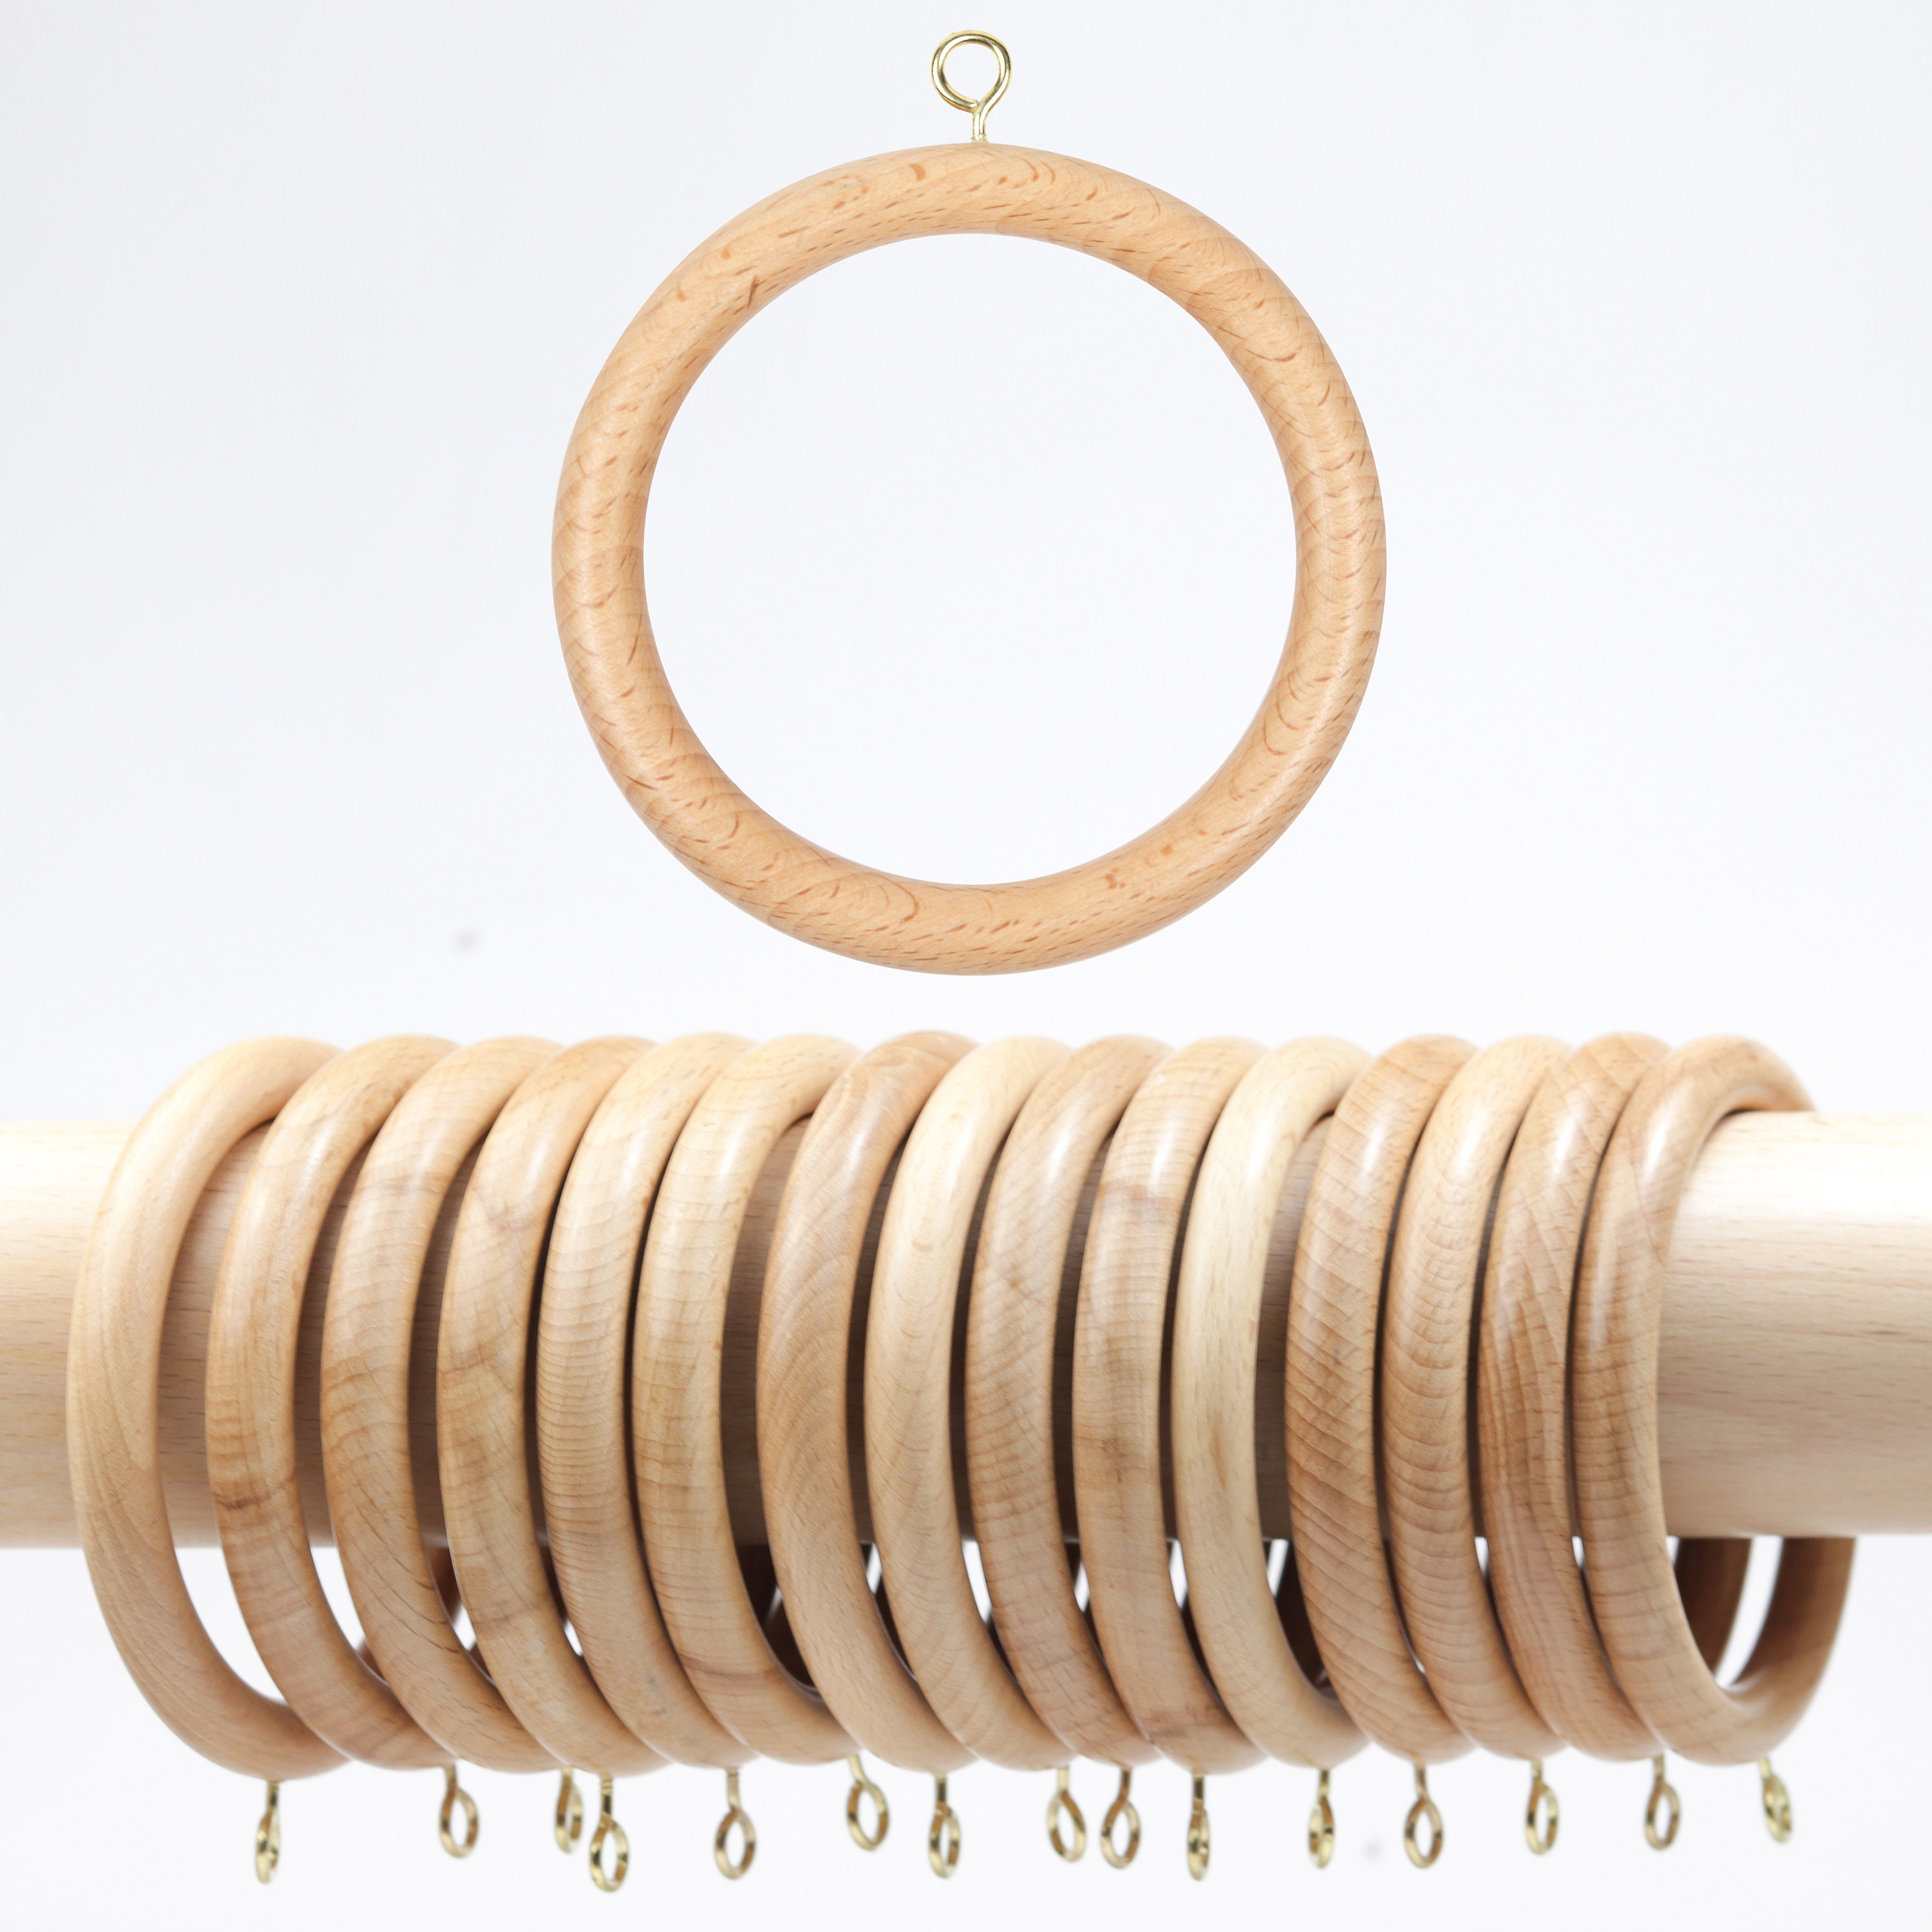 Wooden Rings for Macrame- Pack of 3 – Knotting Hillbilly